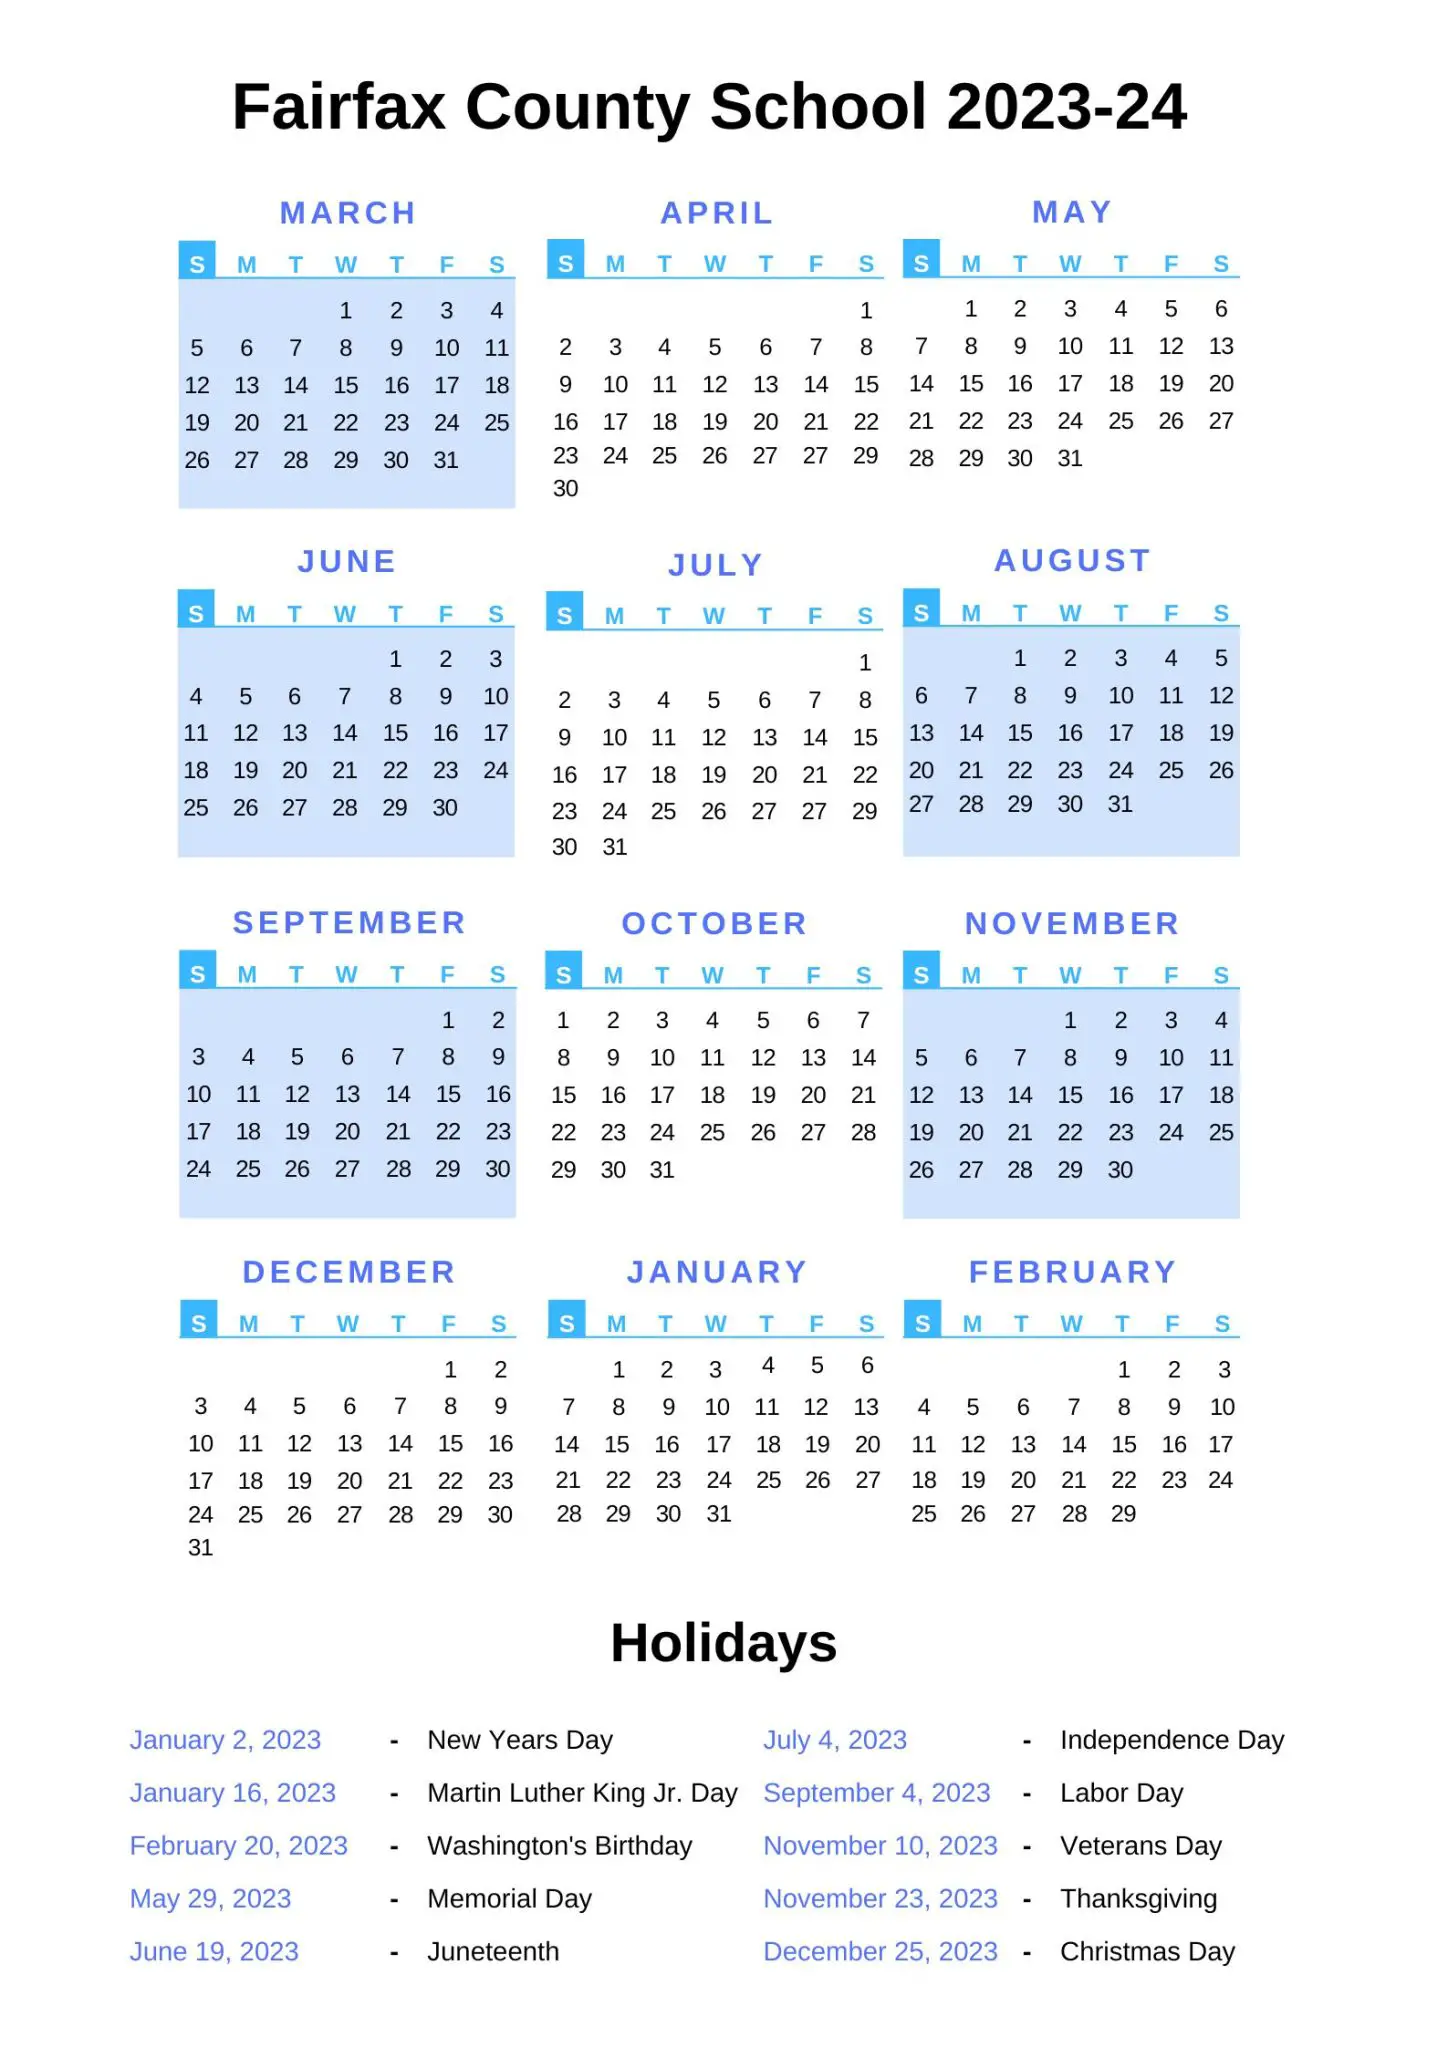 Fairfax County School Calendar with Holidays 20222023